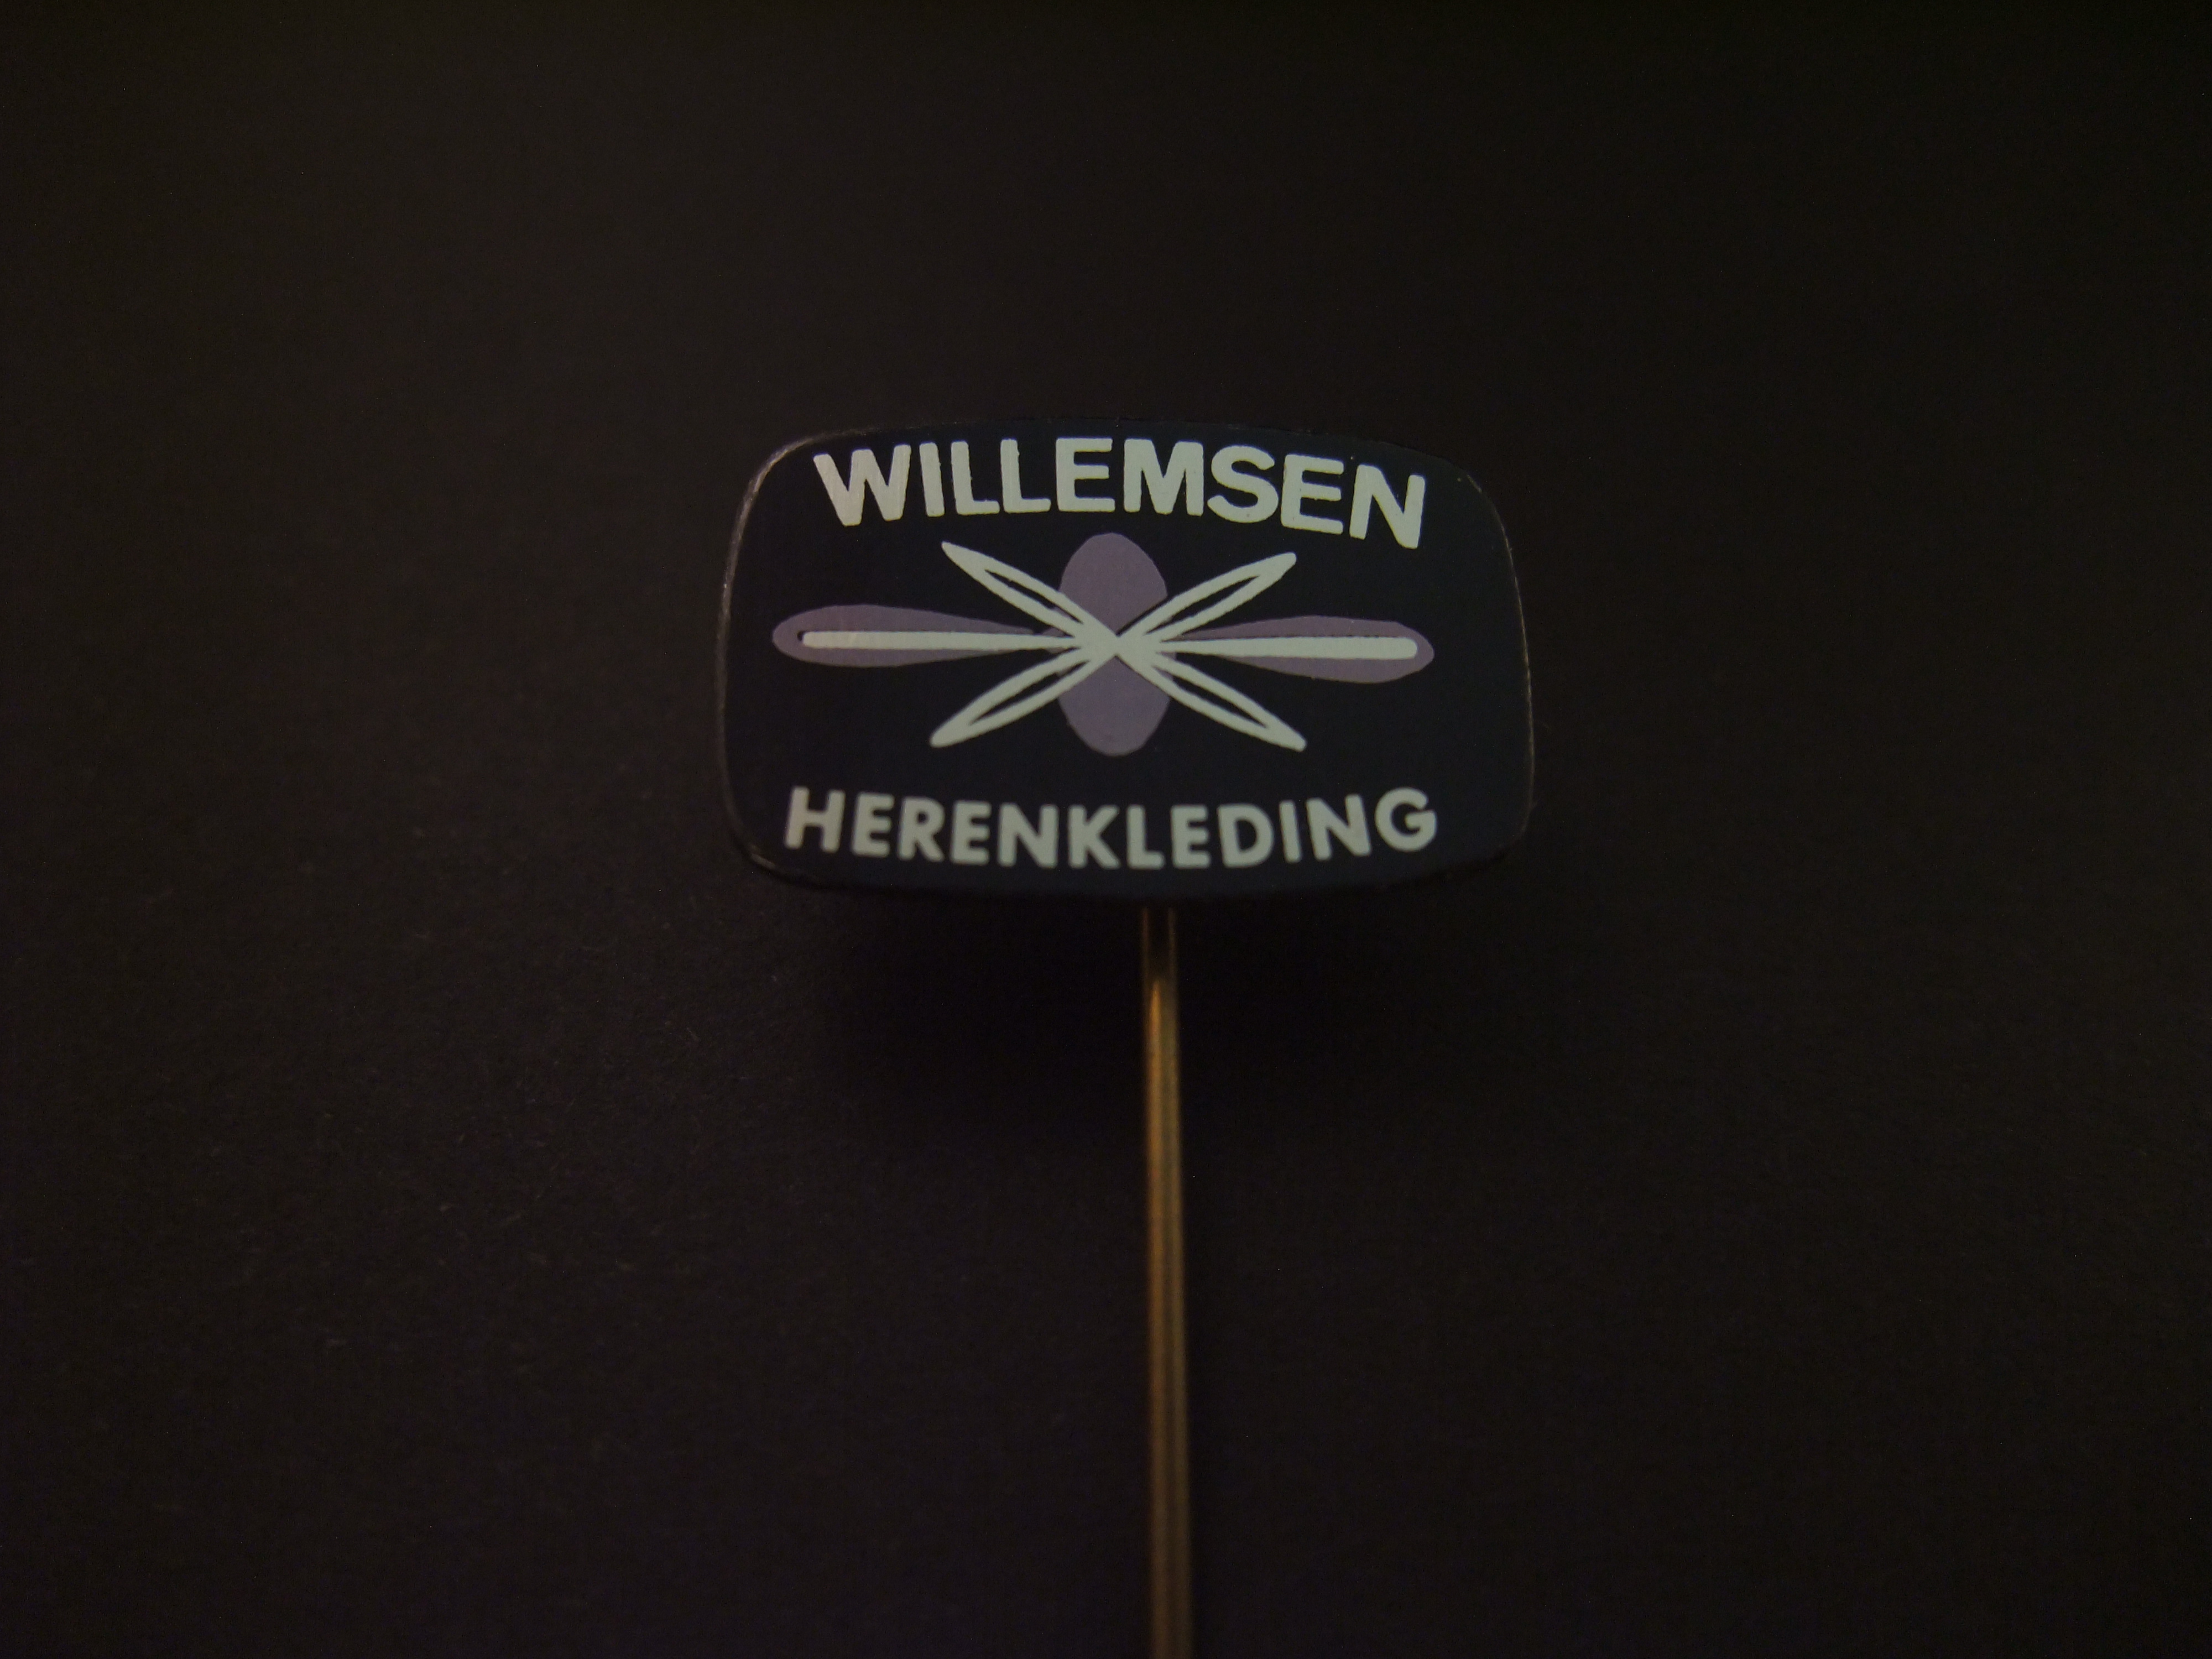 Willemsen herenkleding